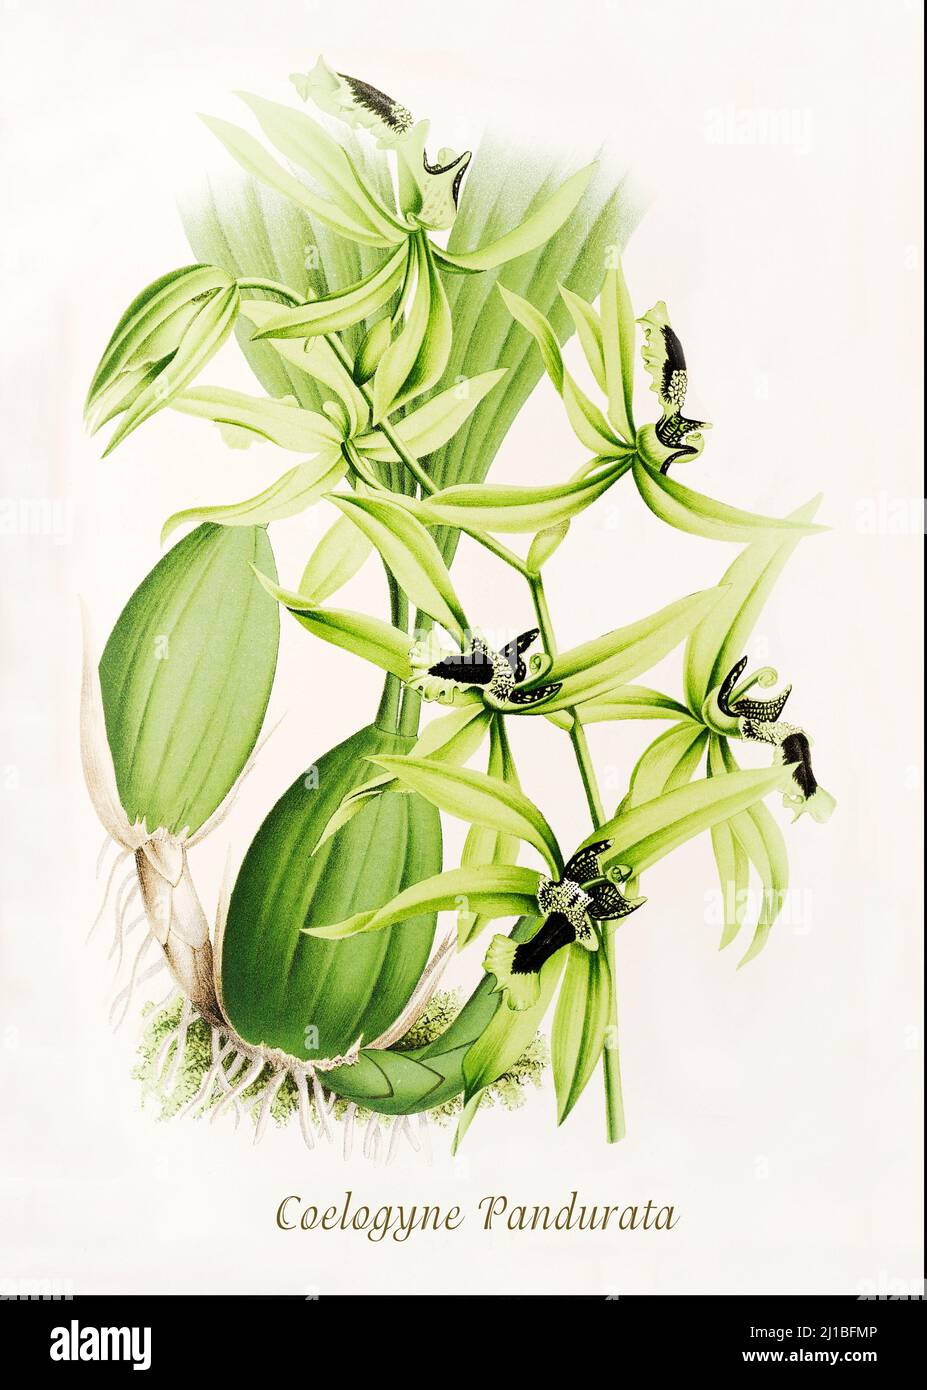 Una ilustración de finales del siglo 18th de Coelogyne pandurata, una  especie de orquídea en la familia Orchidaceae, nativa de Malasia, Sumatra,  Borneo y Filipinas, como una epífita de gran tamaño y